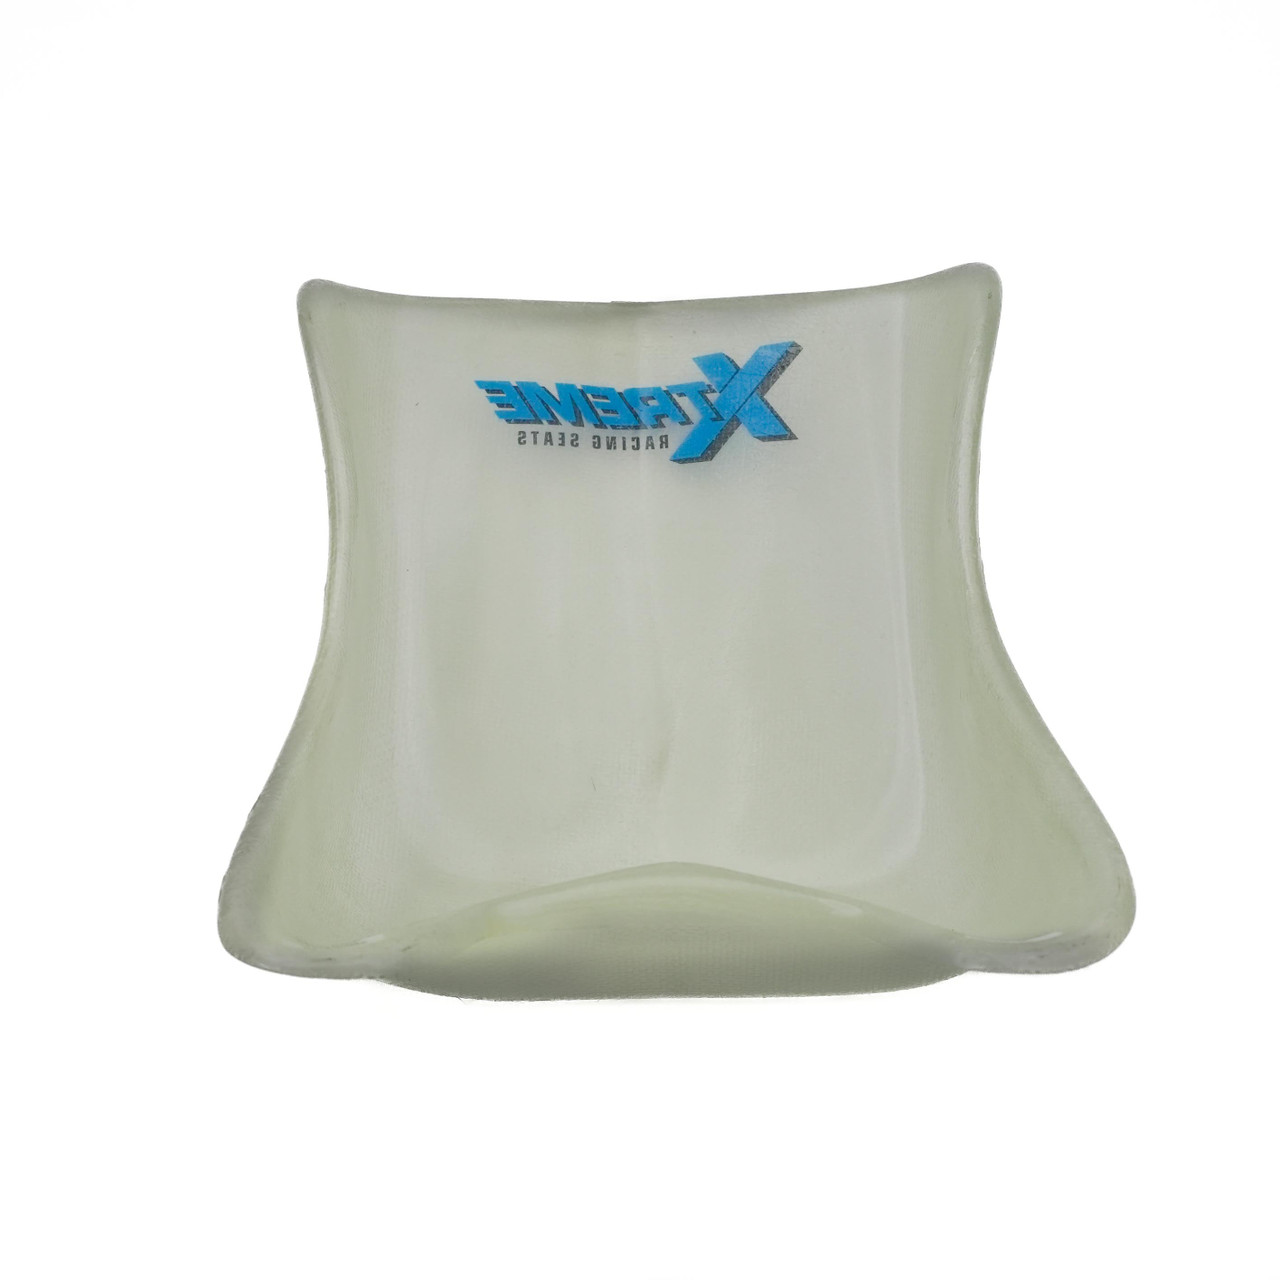 Xtreme Racing Seat XL, Flat Bottom, Standard Flex (SXK0178), Seat front view.